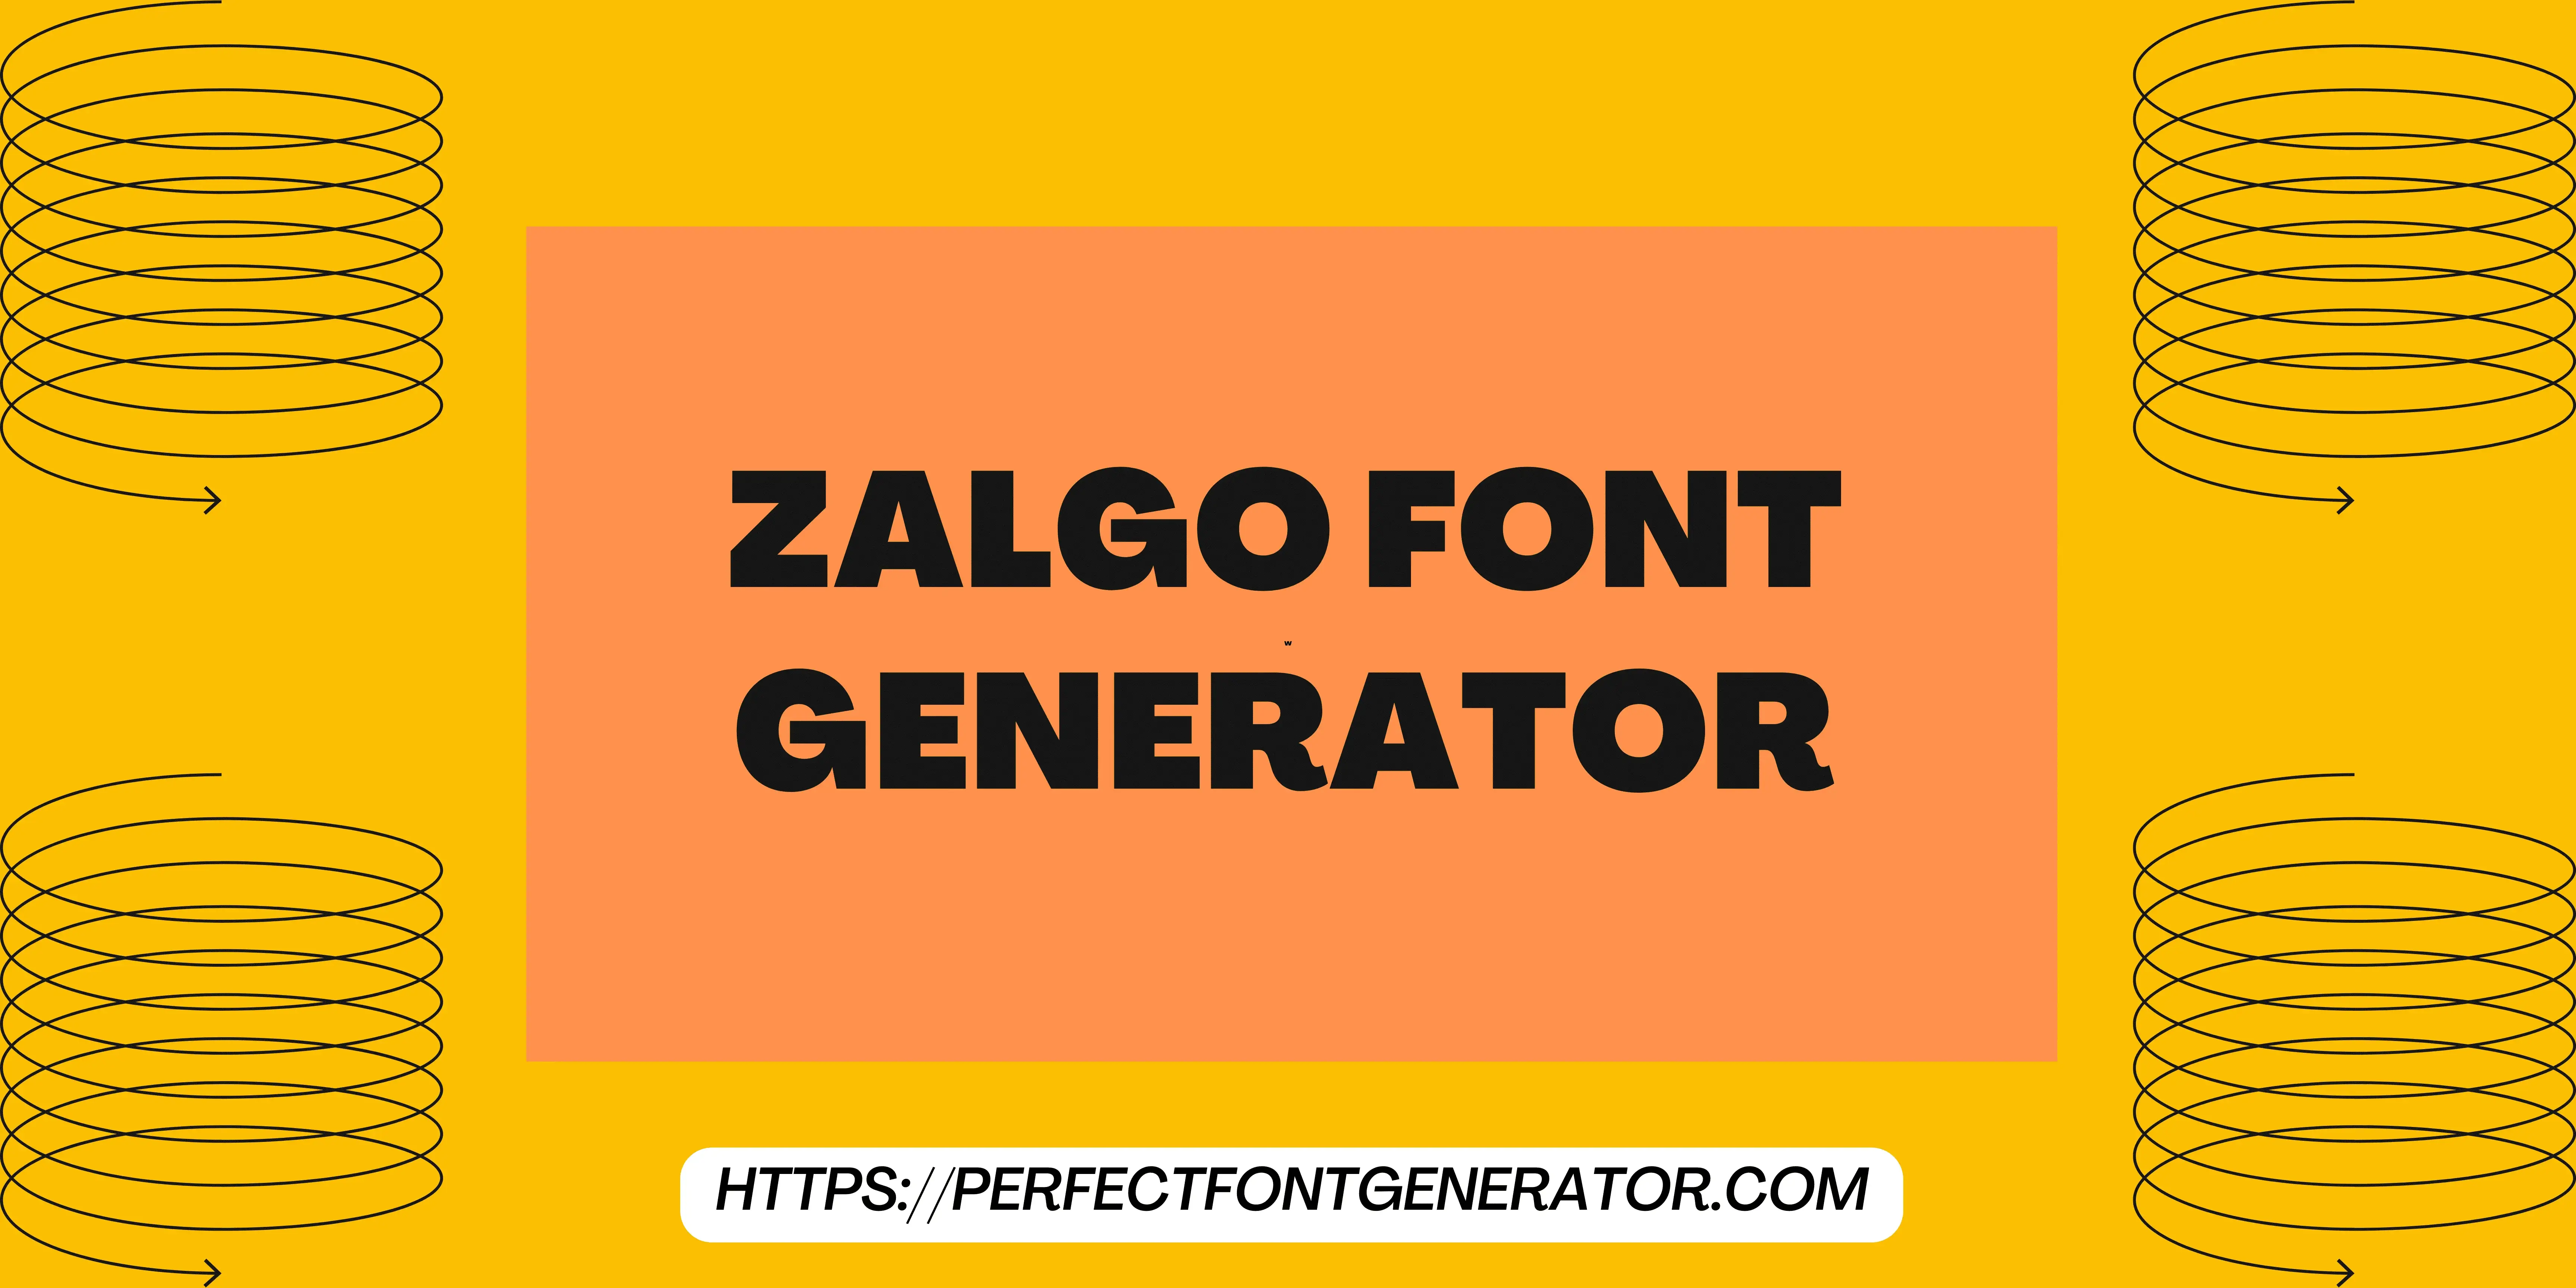 zalgo font generator